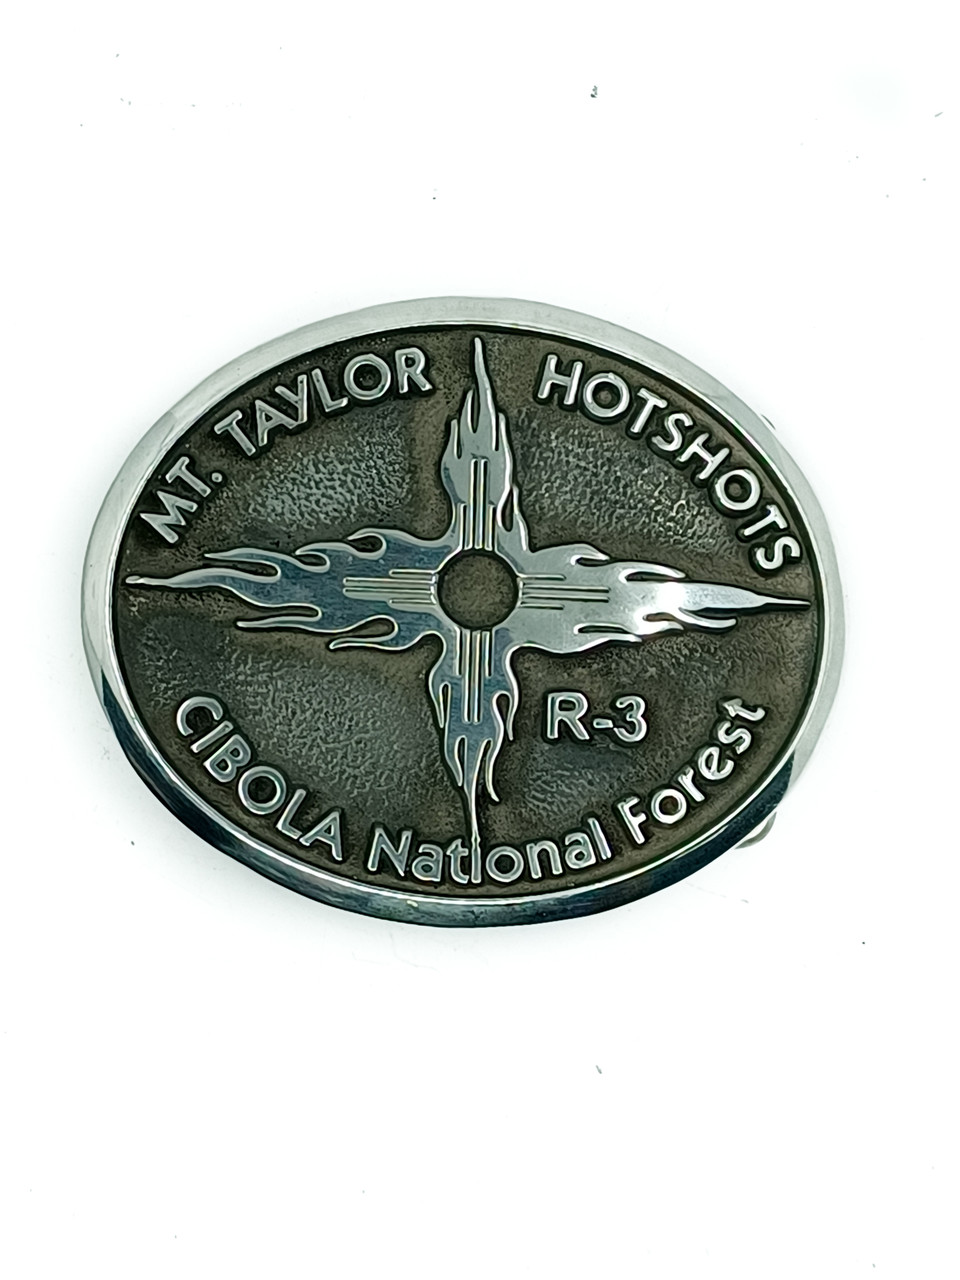 Mt. Taylor Hotshots Buckle (RESTRICTED)